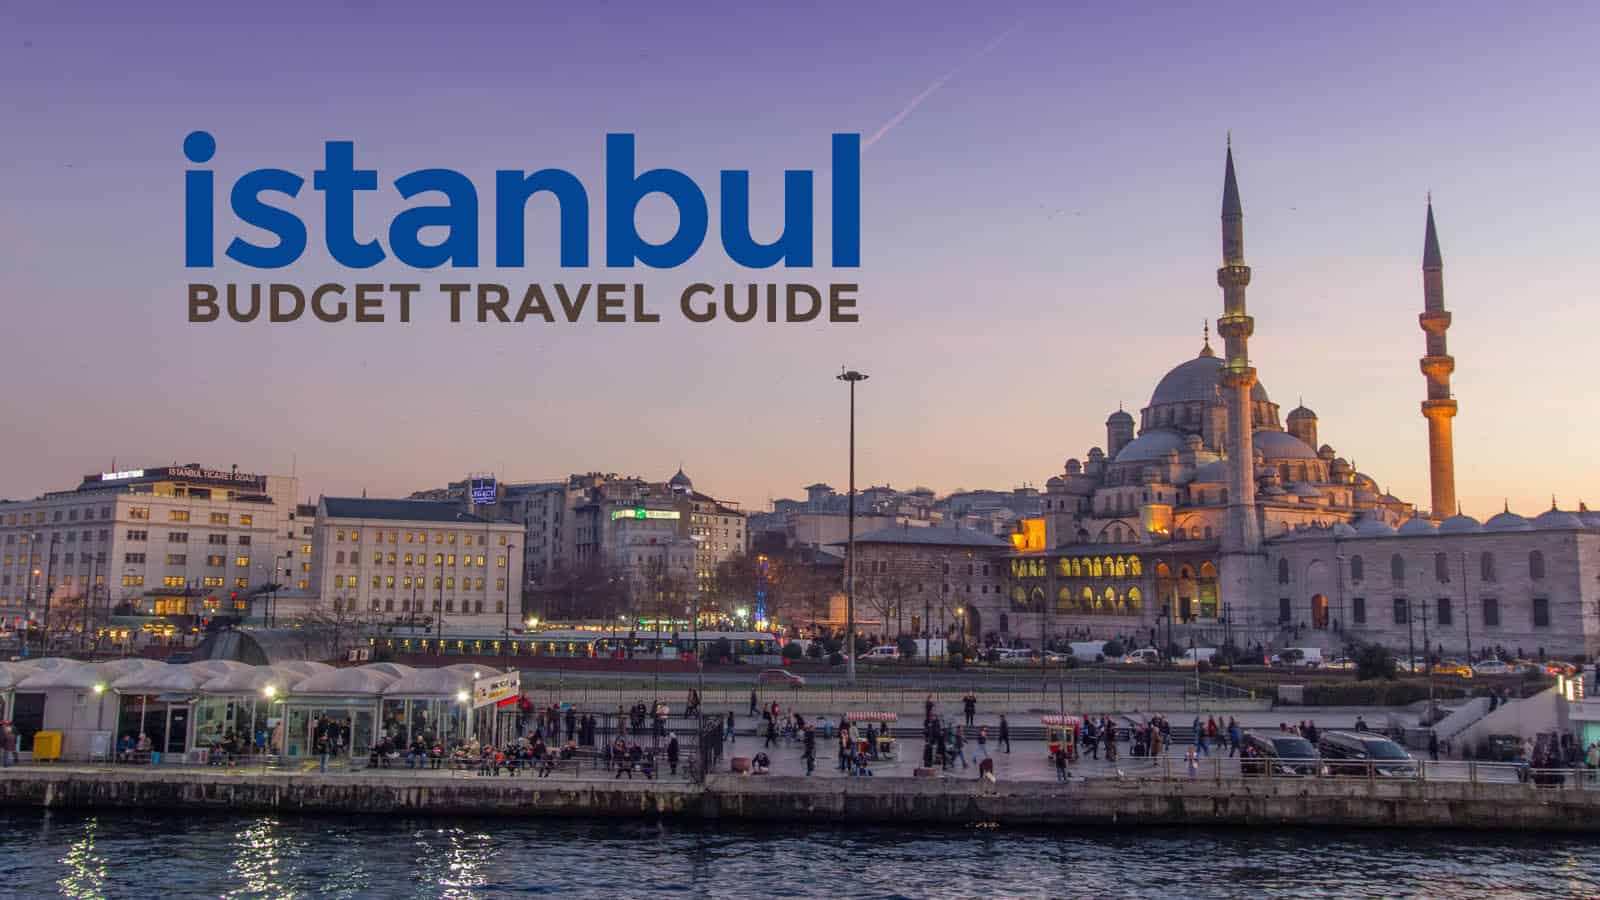 伊斯坦布尔的预算:旅游指南和行程